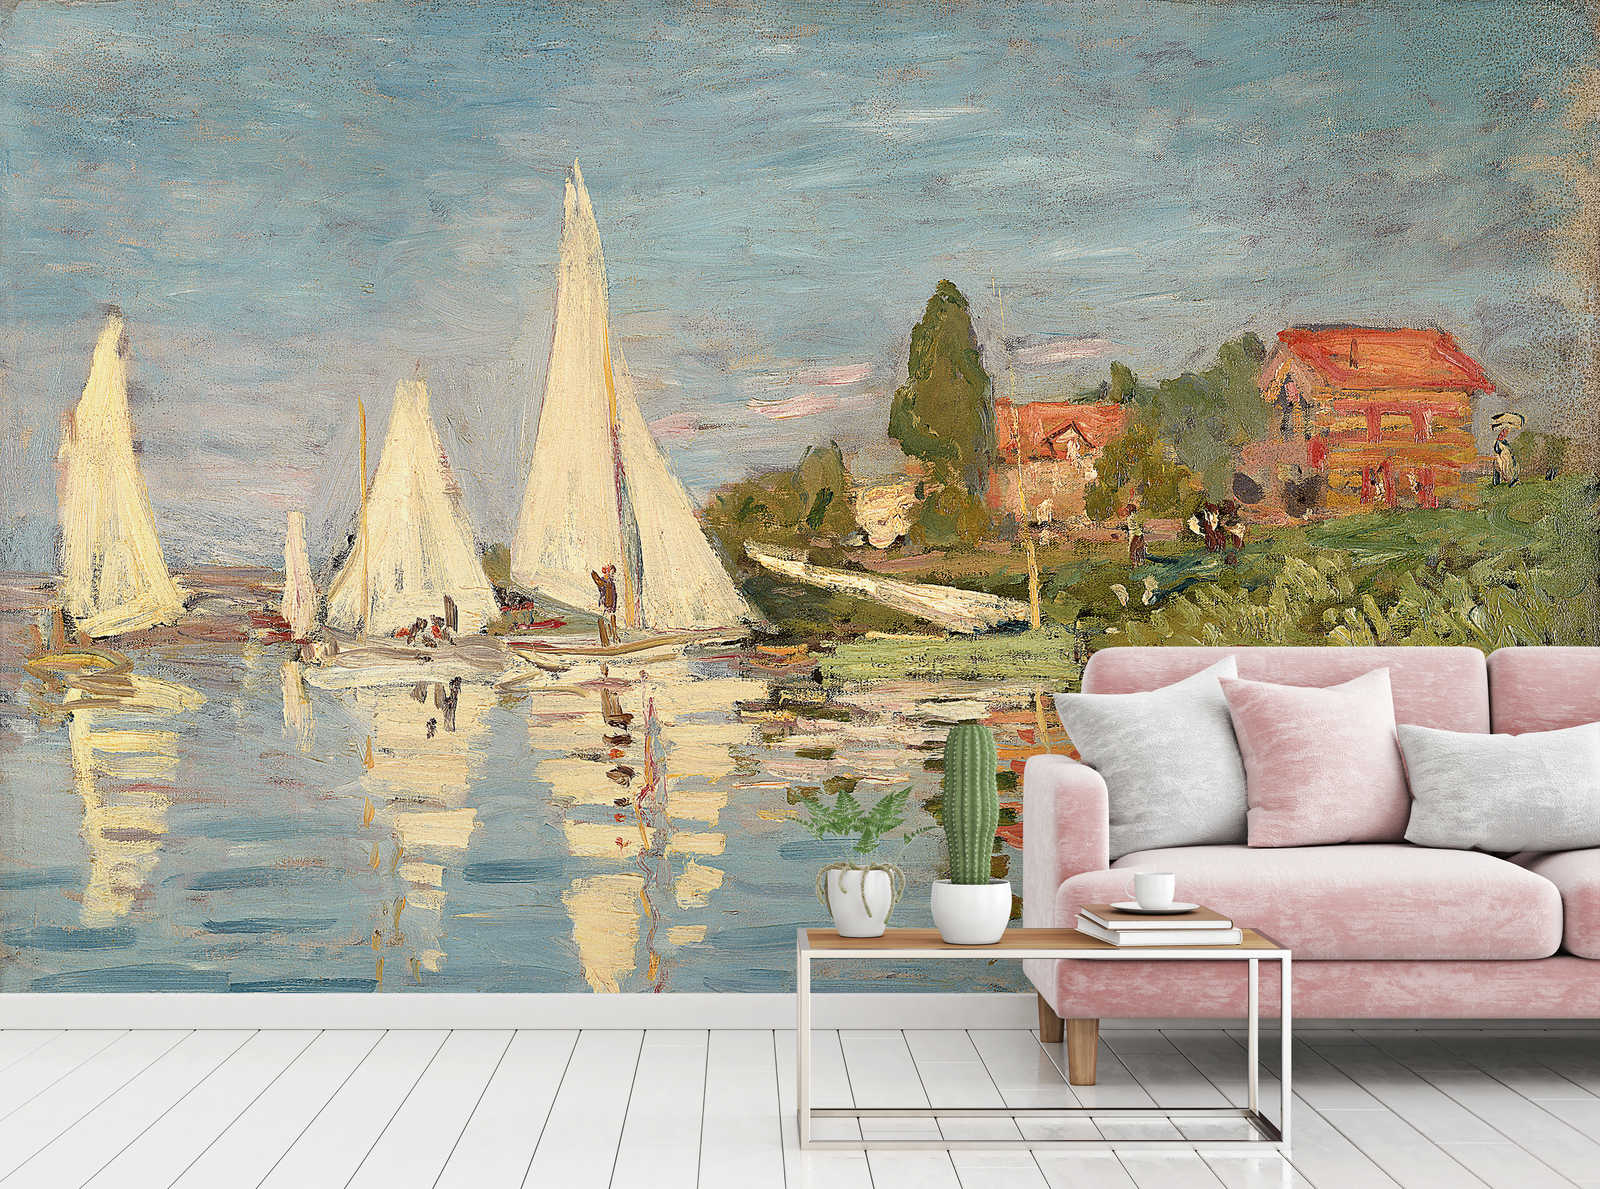             Muurschildering "Danae" van Claude Monet
        